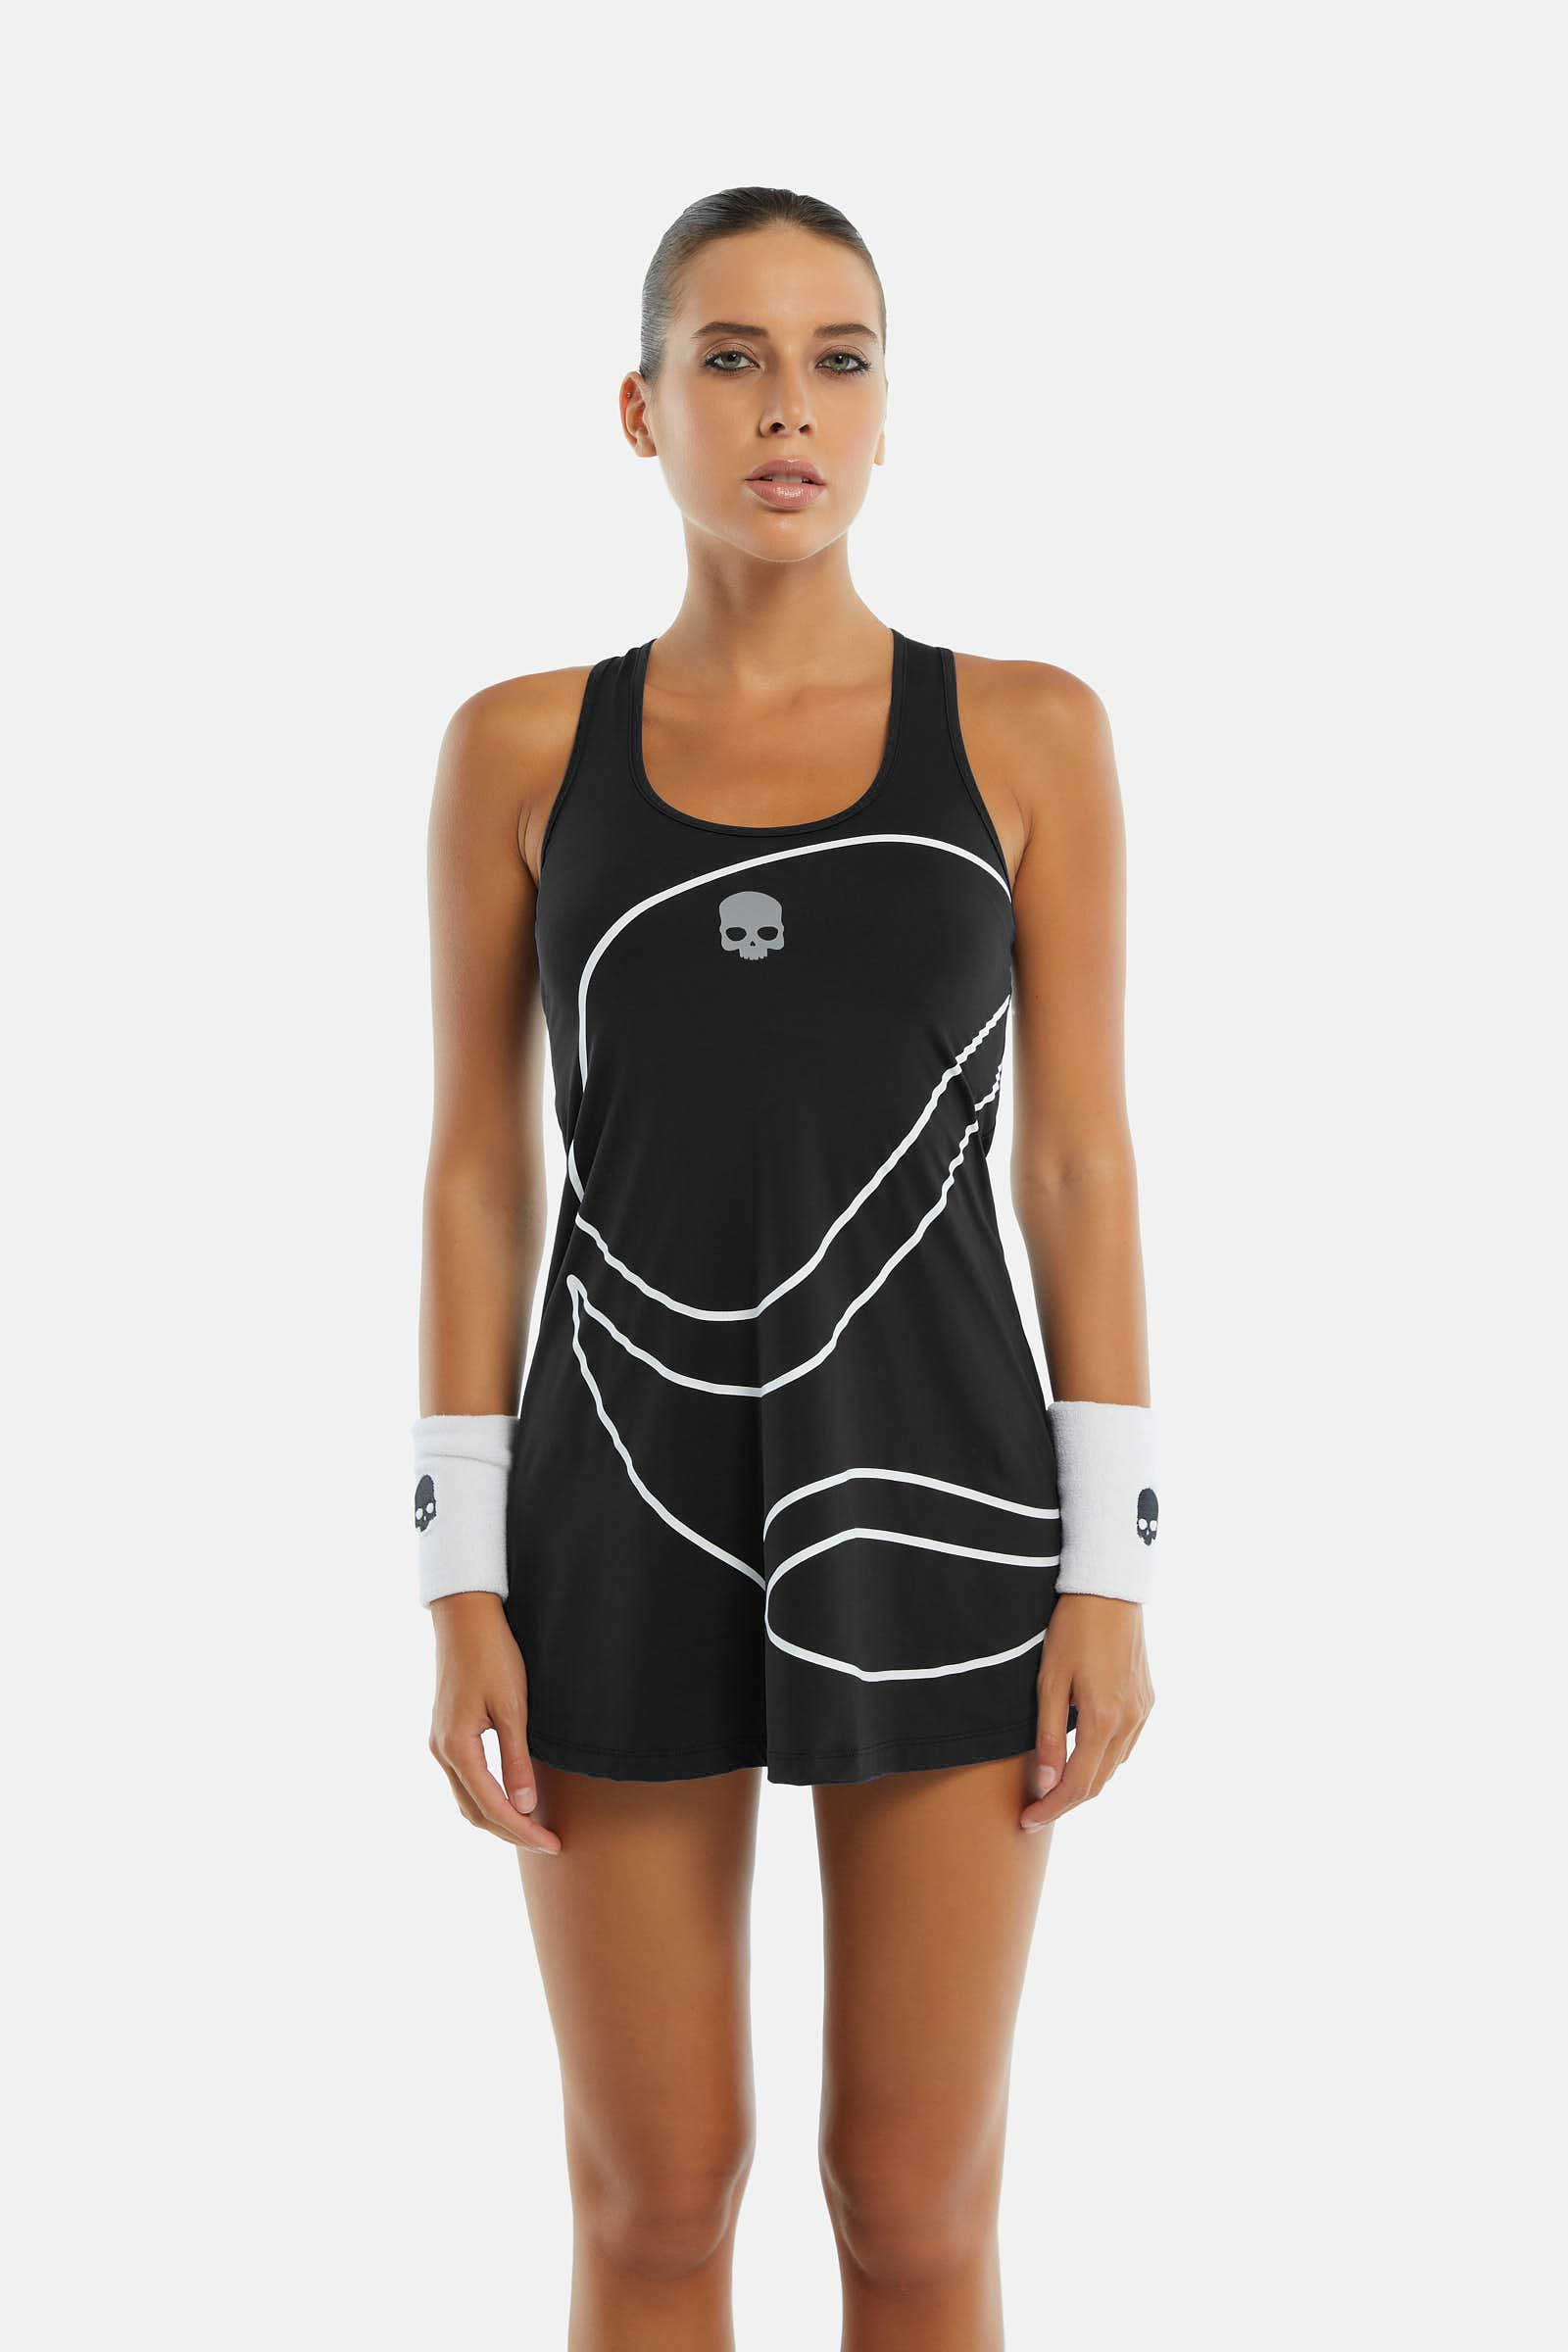 3D TENNIS BALL TECH DRESS - Apparel - Hydrogen - Luxury Sportwear